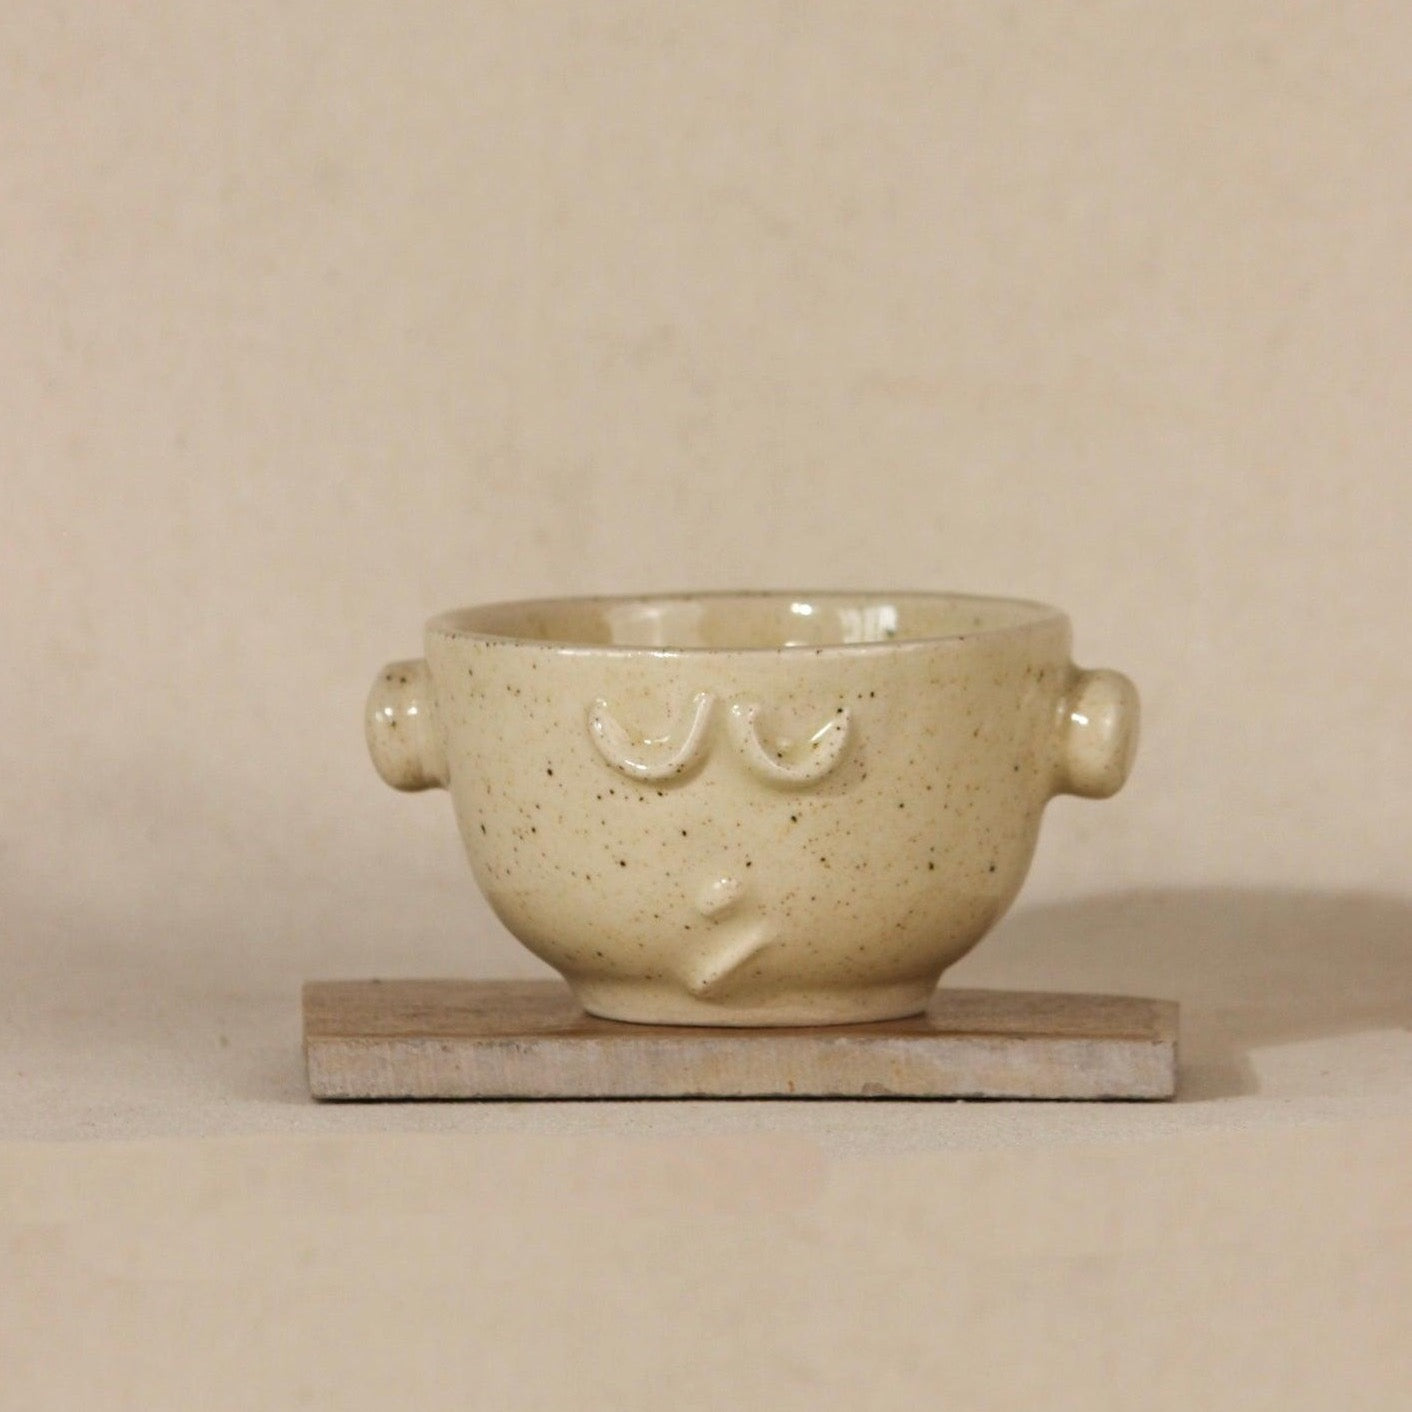 Quirky Ceramic Mugs Bundle